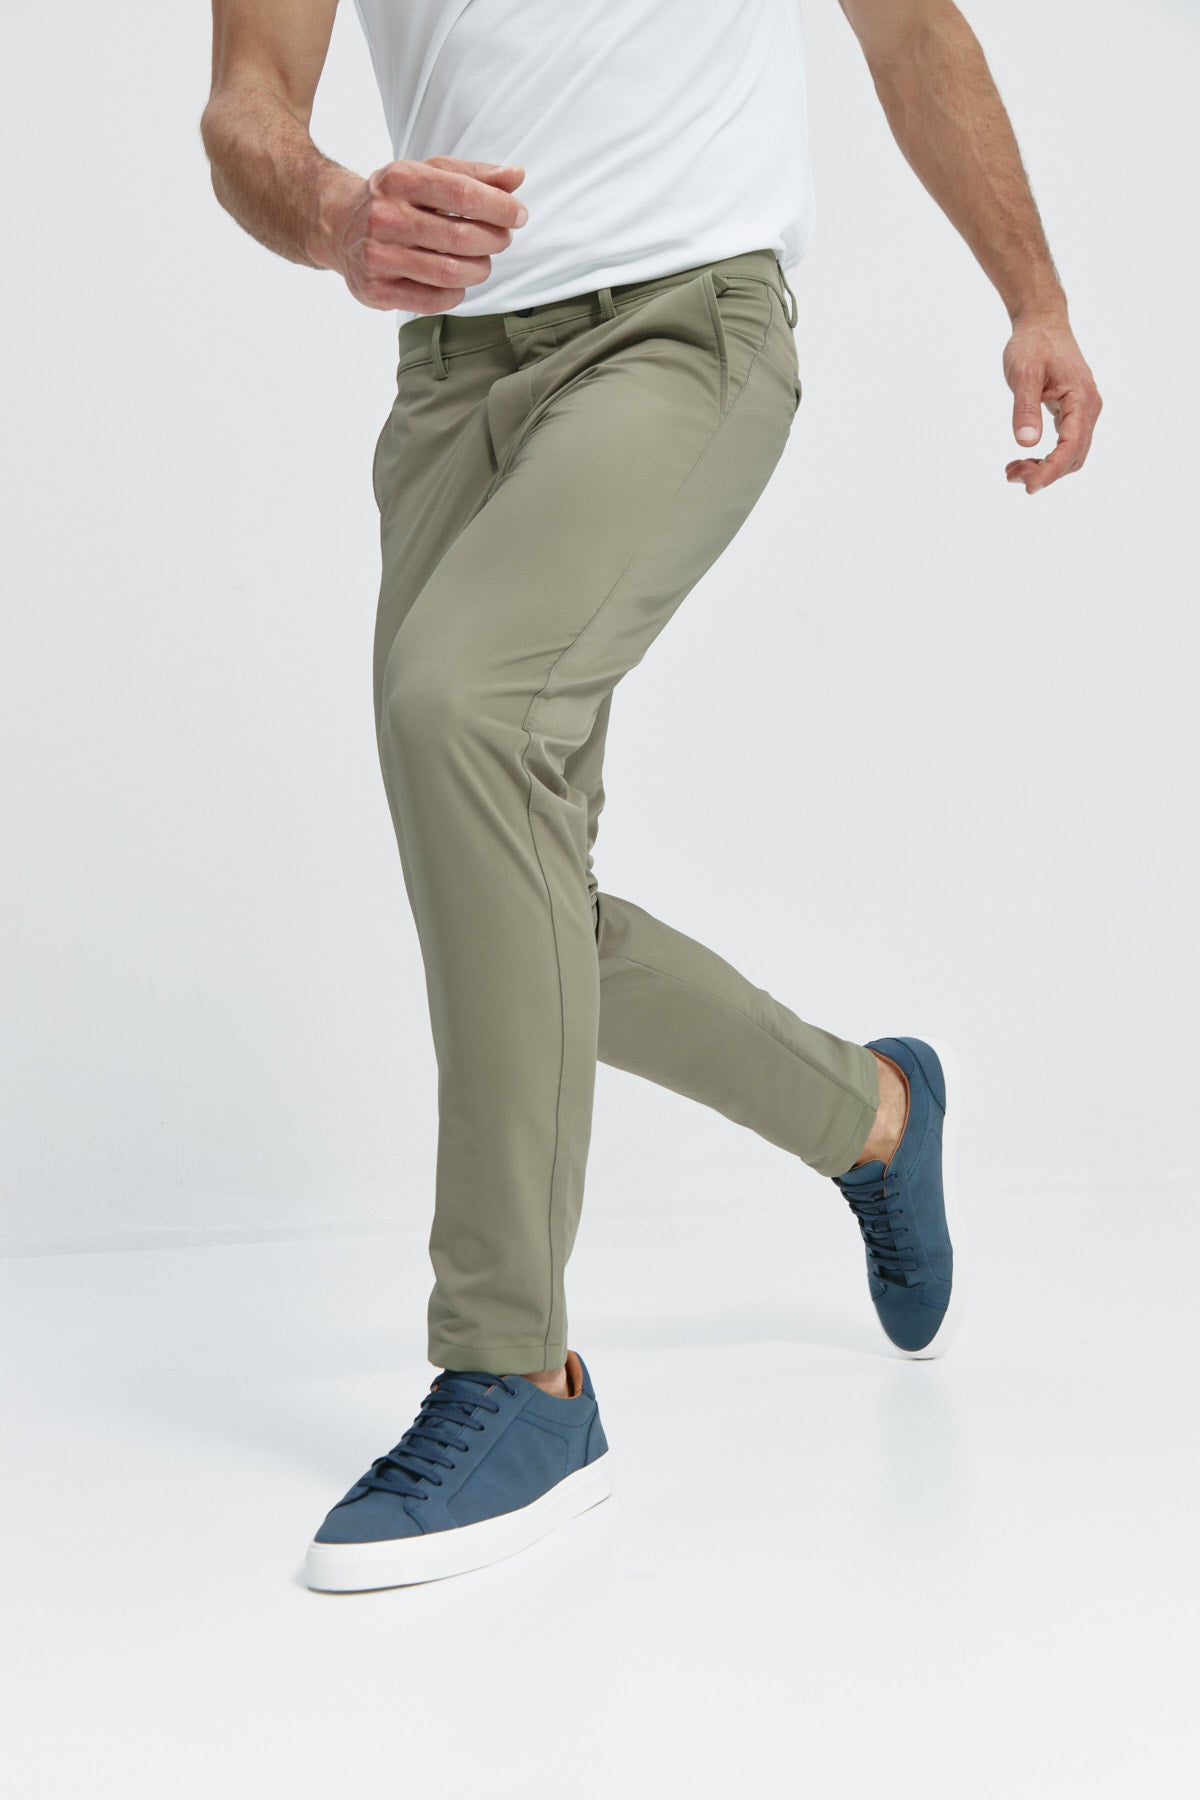 Pantalón de hombre que realza la figura y proporciona total libertad de movimiento.. Foto flexibilidad.